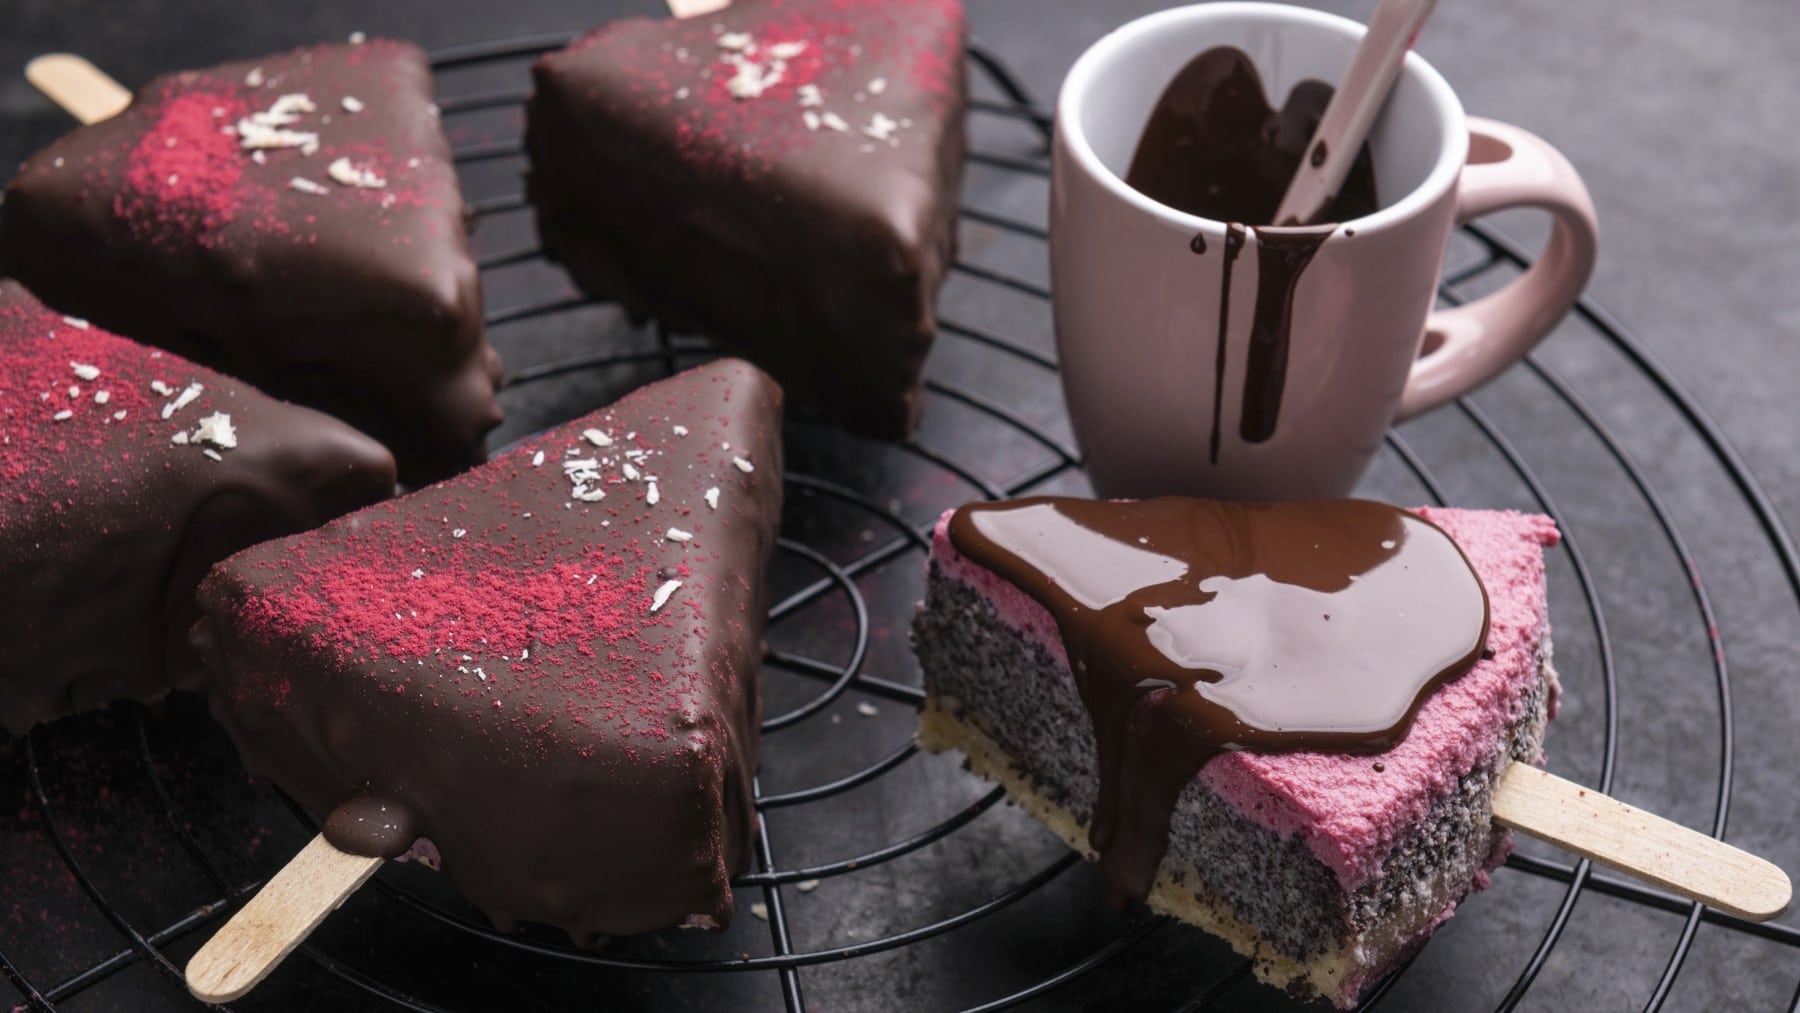 Ein paar vegane Cheesecake-Sticks mit Mohn und Himbeere überzogen mit Schokolade neben einer Tasse mit geschmolzener Schokolade auf einem Gitter vor dunklem Hintergrund.